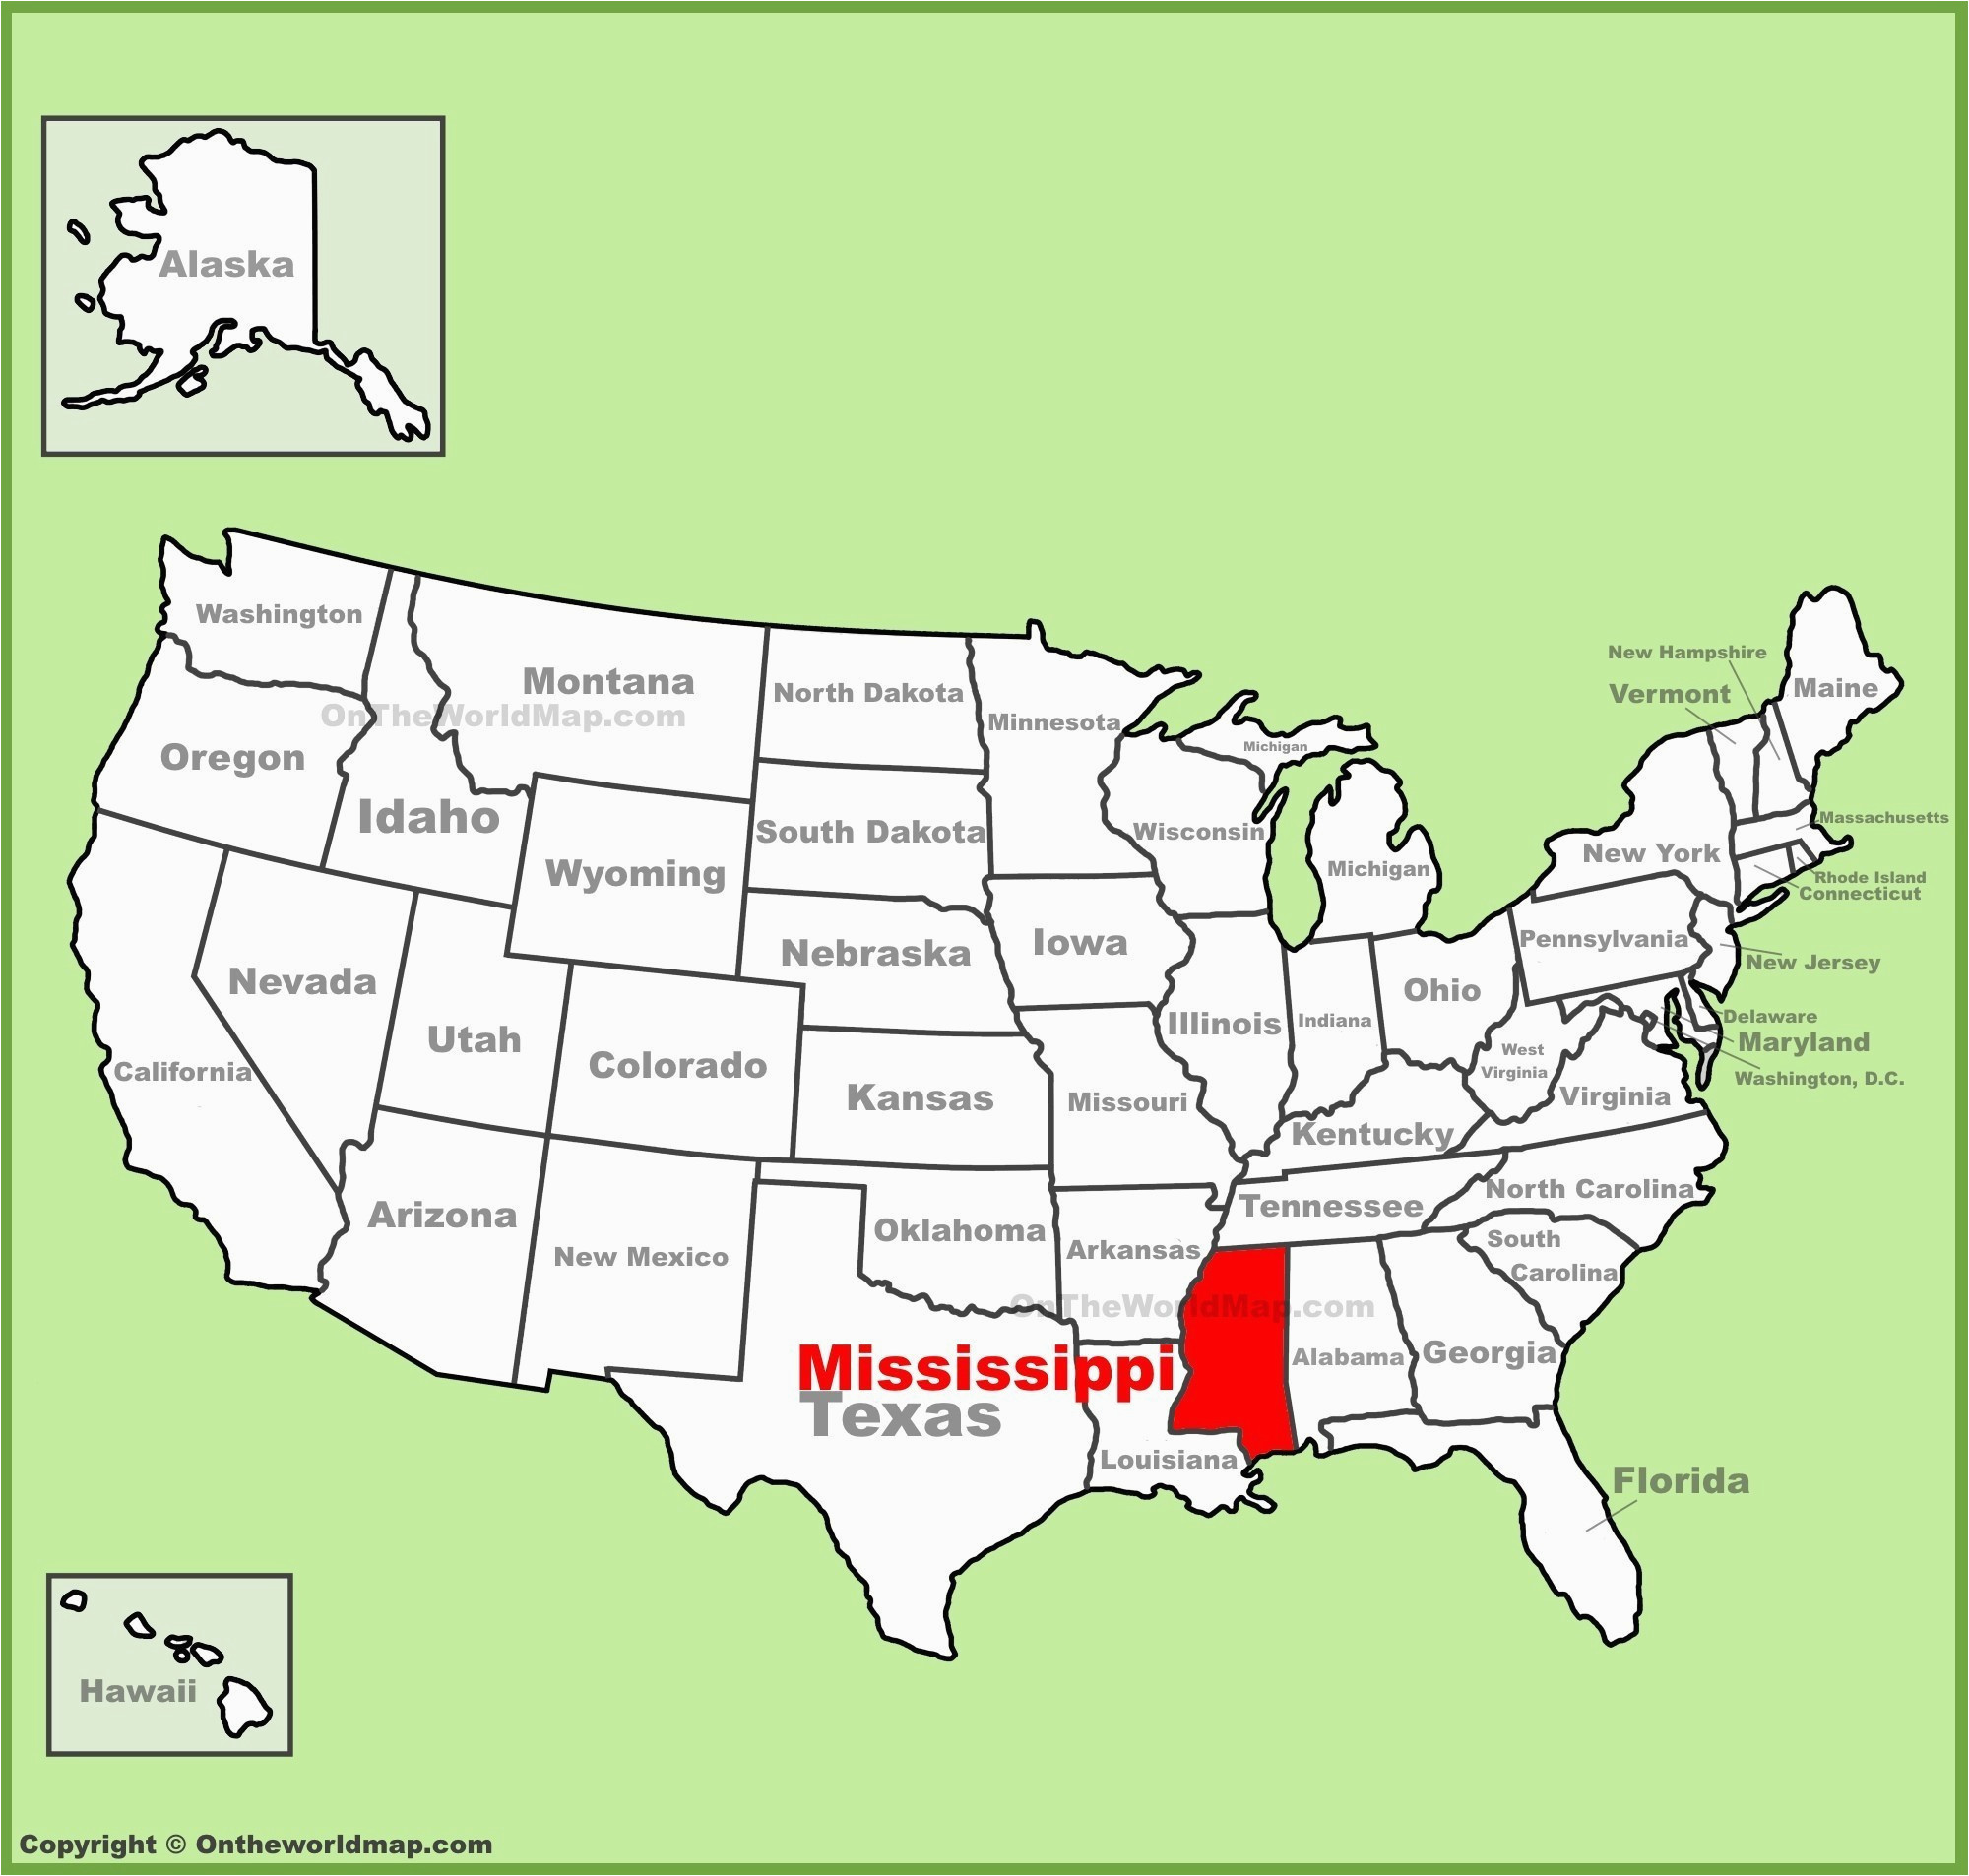 North Carolina On Usa Map north Carolina United States Map Fresh United States Map Showing